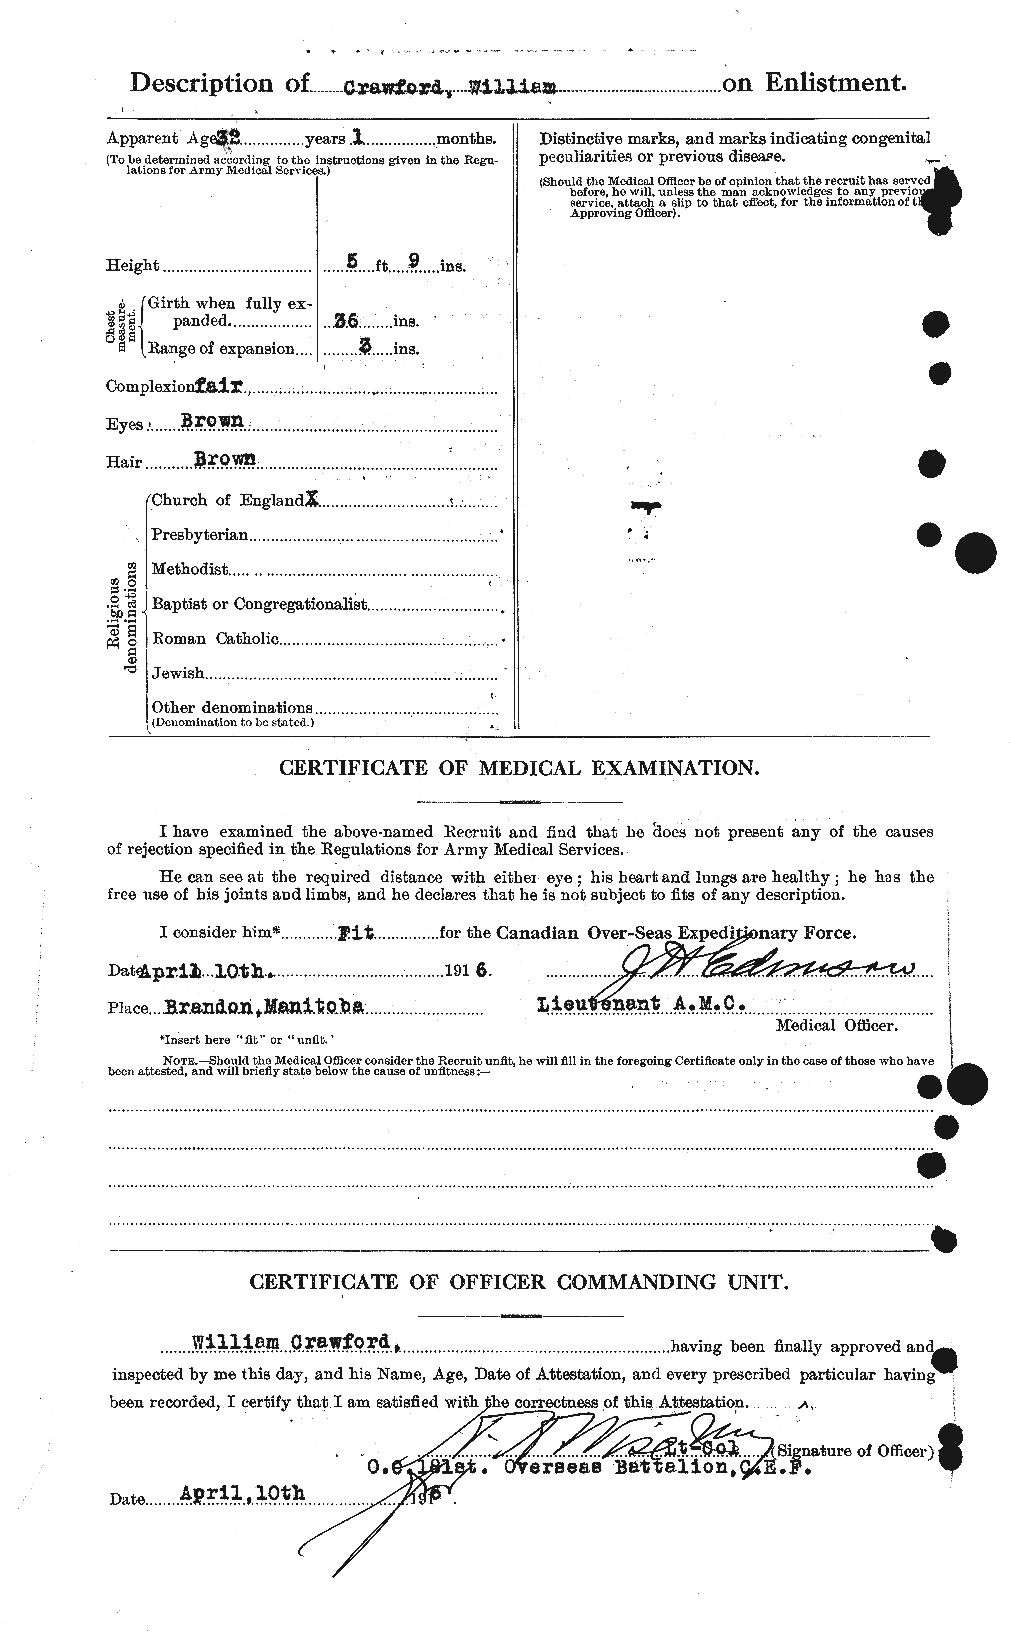 Dossiers du Personnel de la Première Guerre mondiale - CEC 061165b